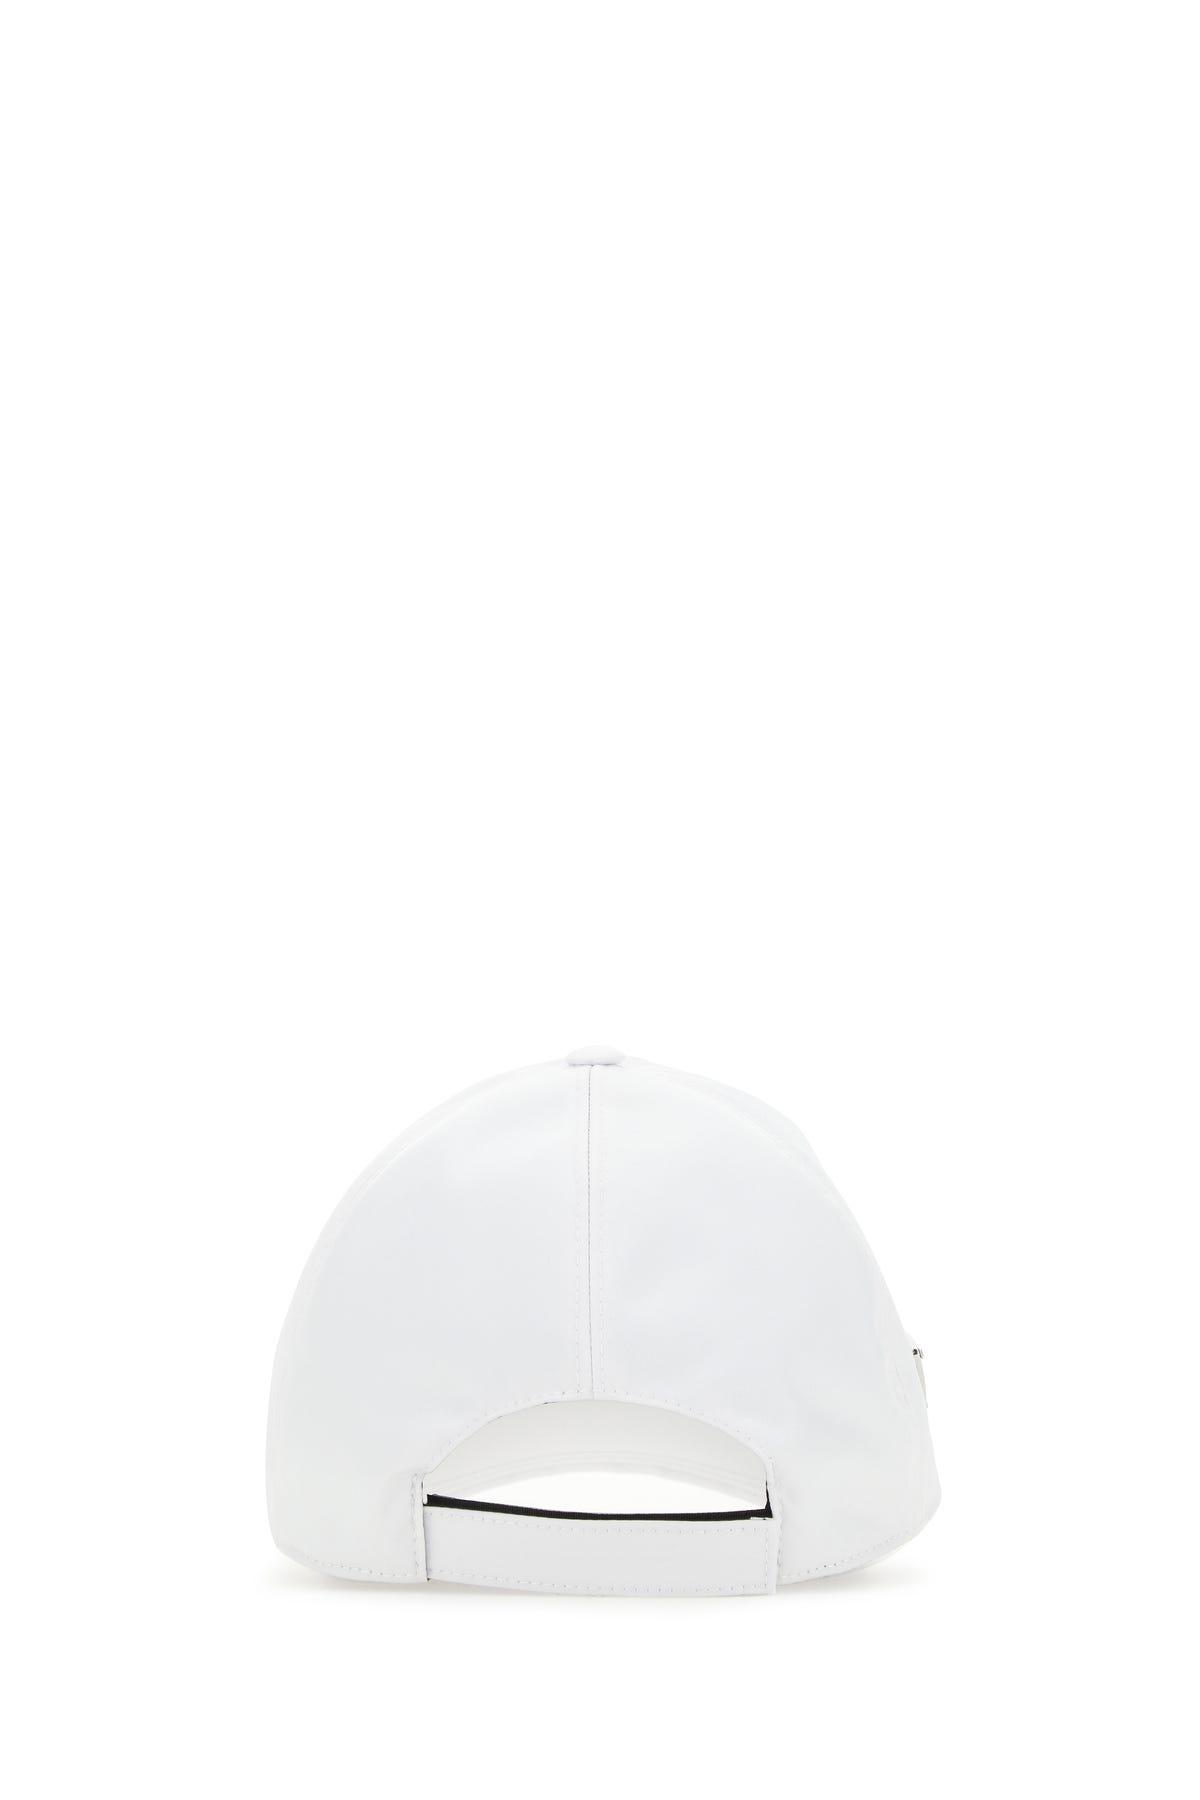 Prada Synthetic White Re-nylon Baseball Cap for Men | Lyst